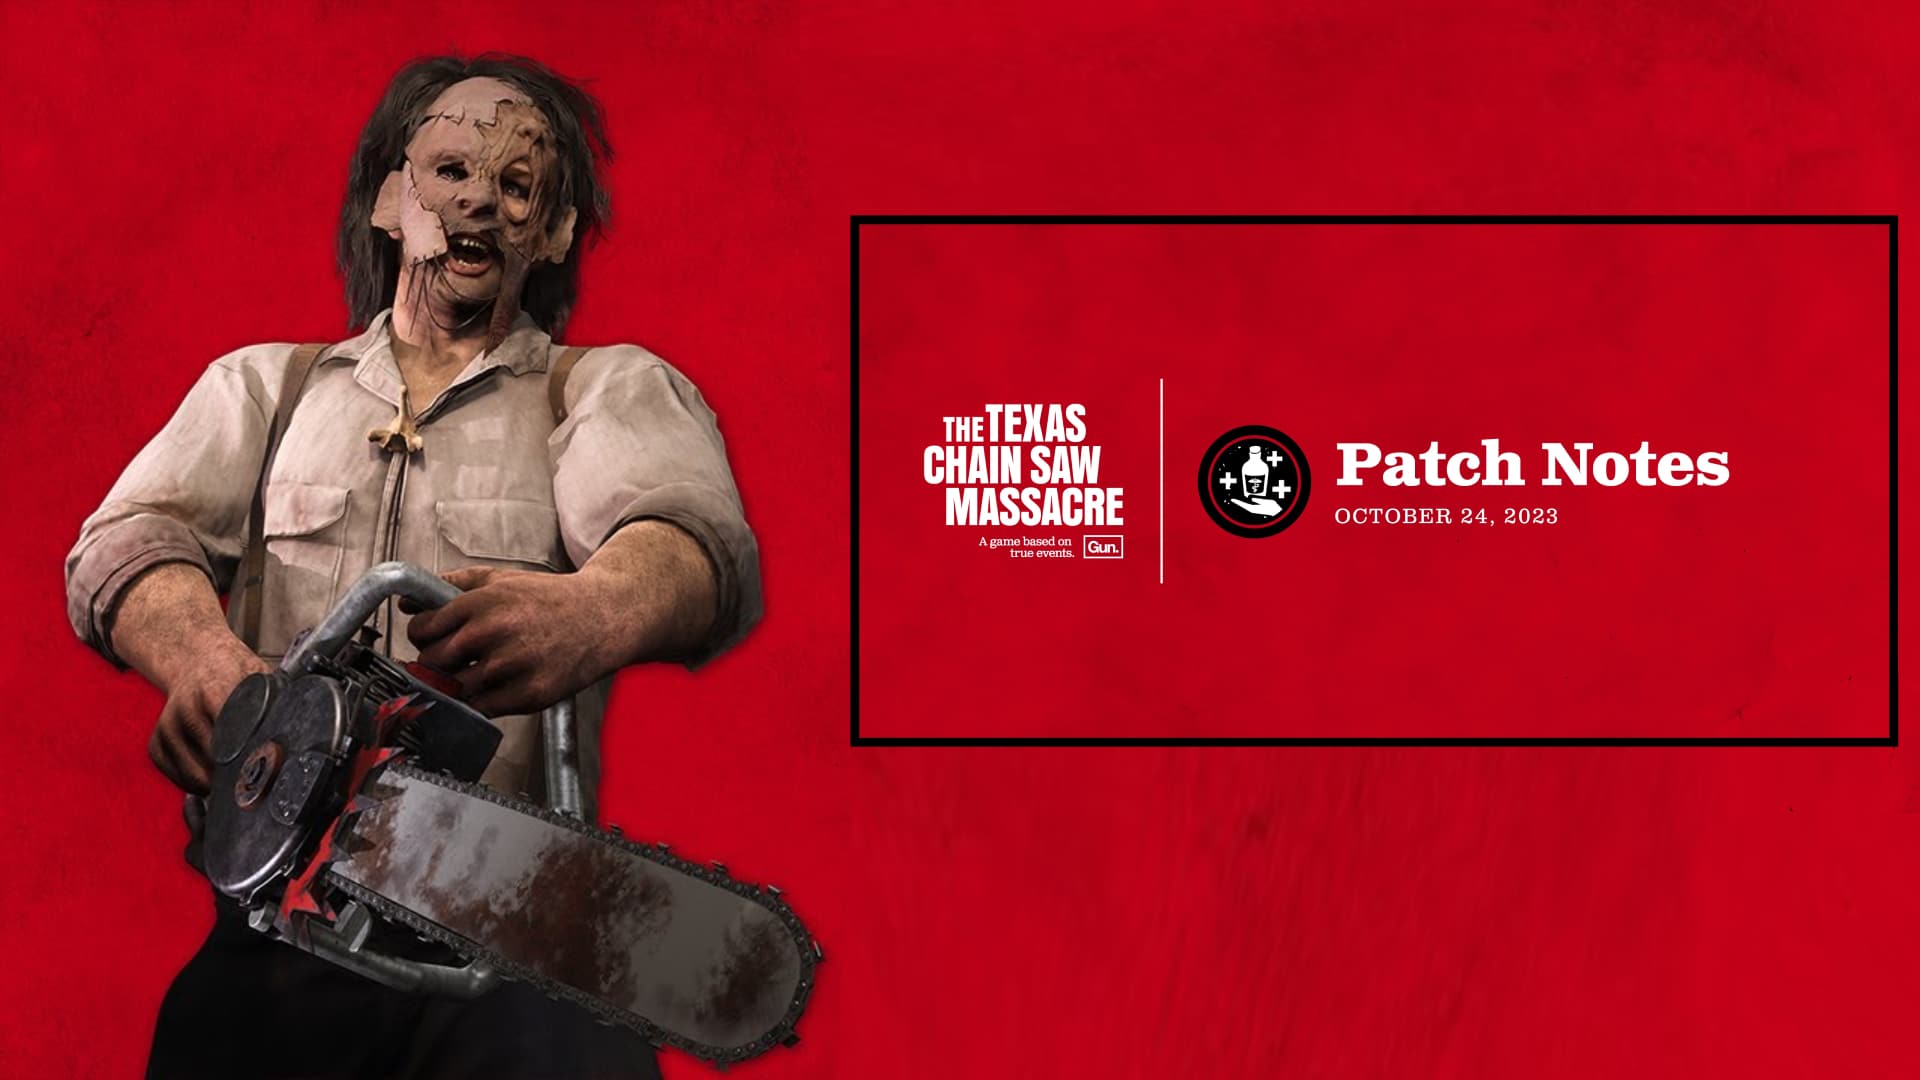 Texas Chainsaw Massacre Update 1.07 für den 24. Oktober